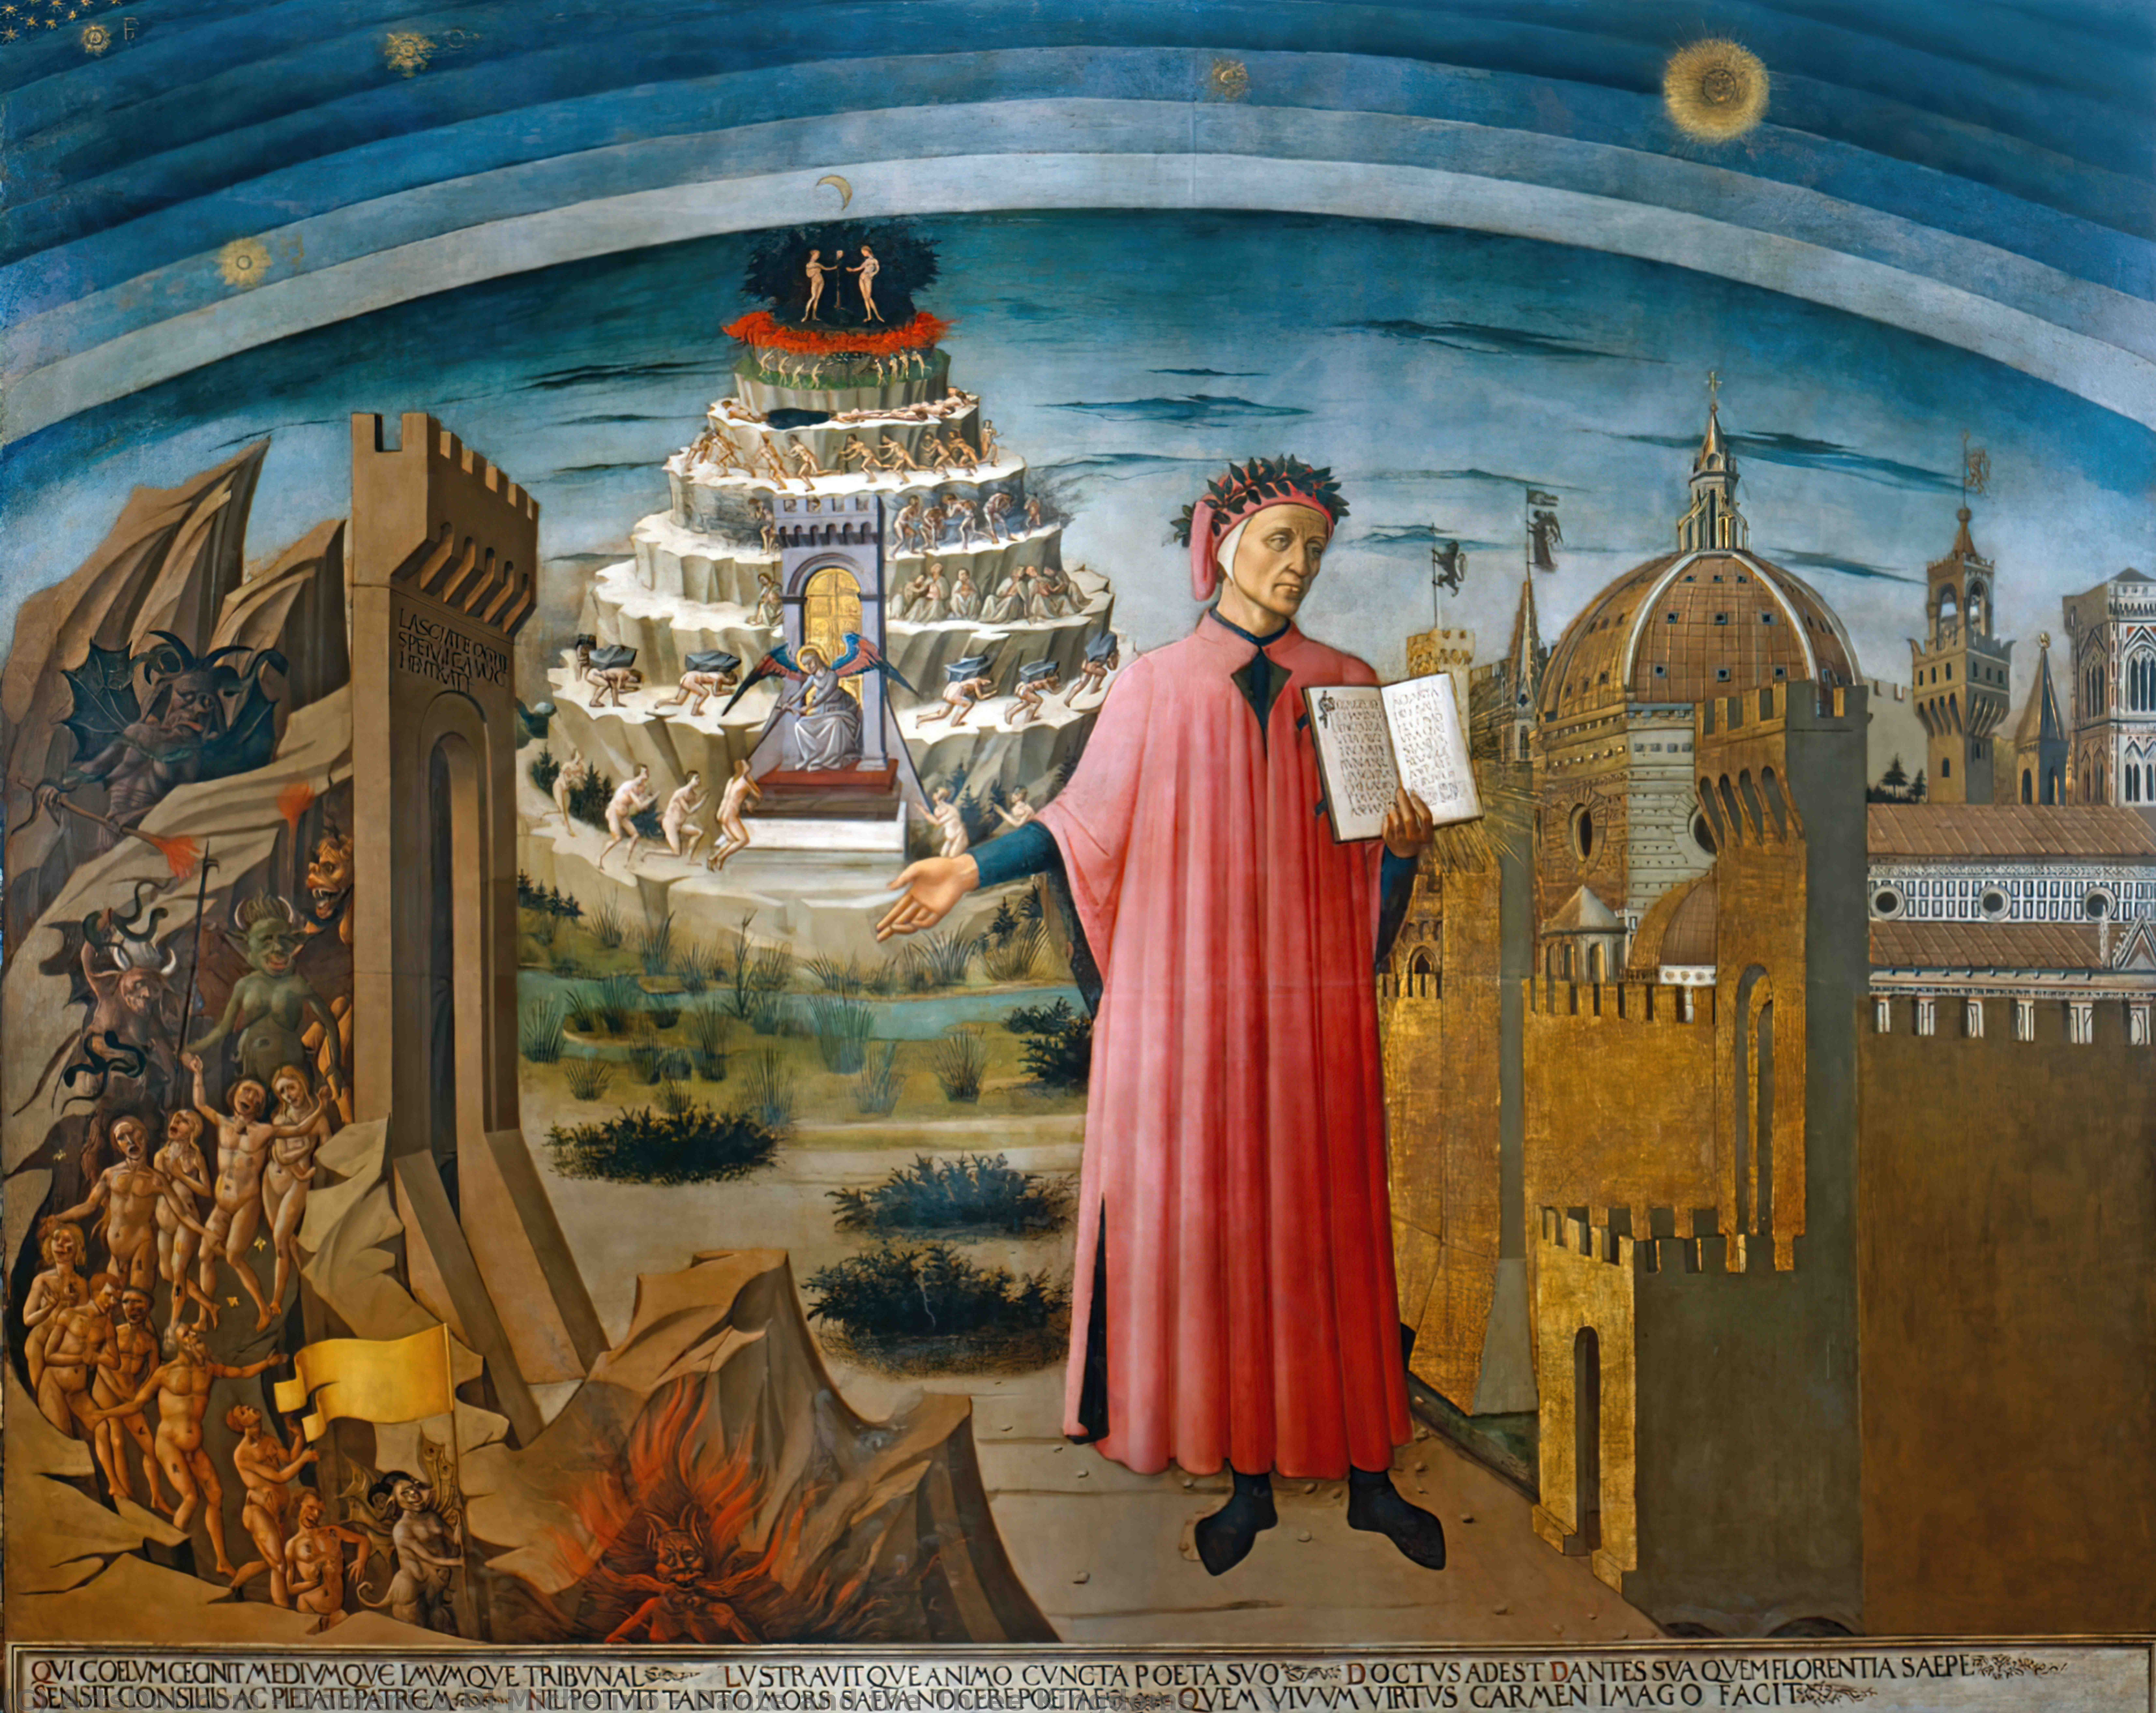 WikiOO.org - Encyclopedia of Fine Arts - Lukisan, Artwork Domenico Di Michelino - Dante and the Three Kingdoms